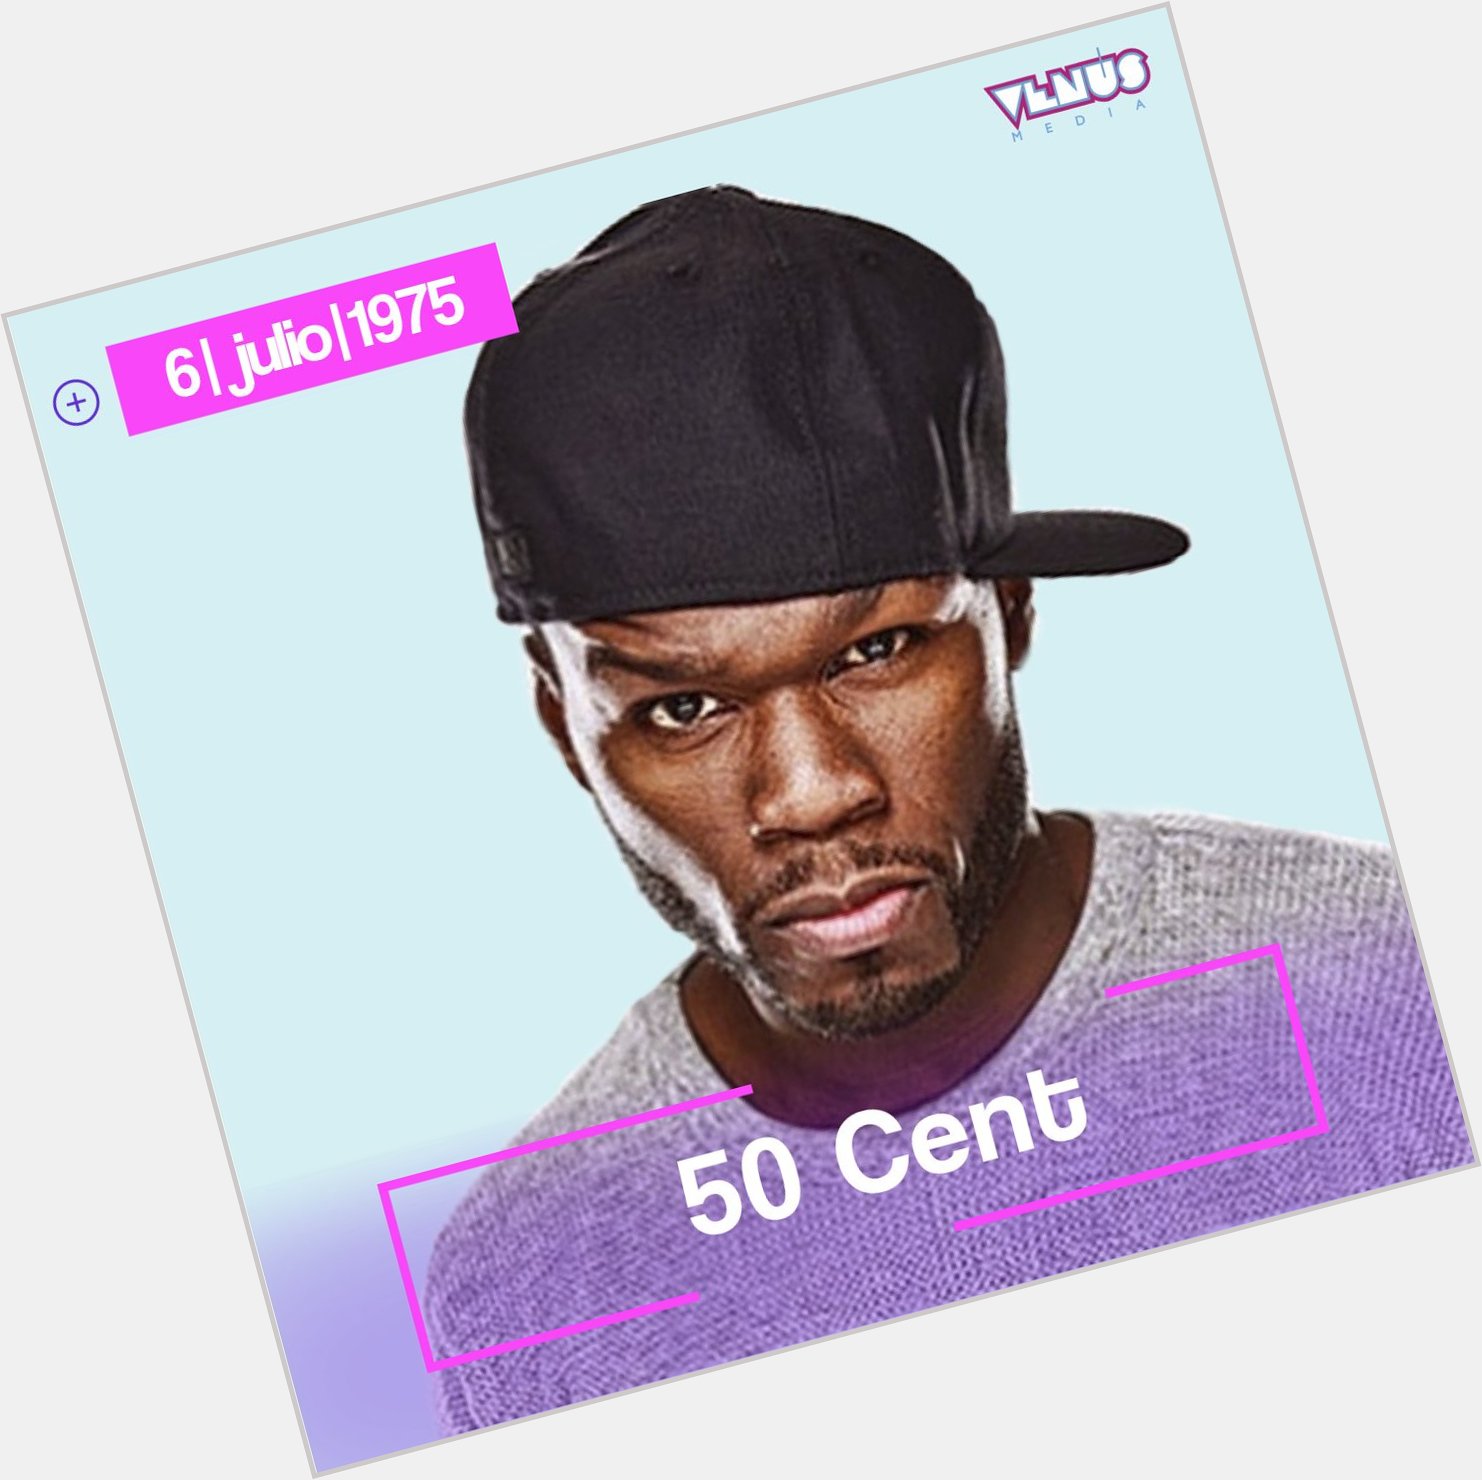 Curtis James Jackson lll, más conocido como 50 Cent, está de cumpleaños el día de hoy   Happy Bday! 